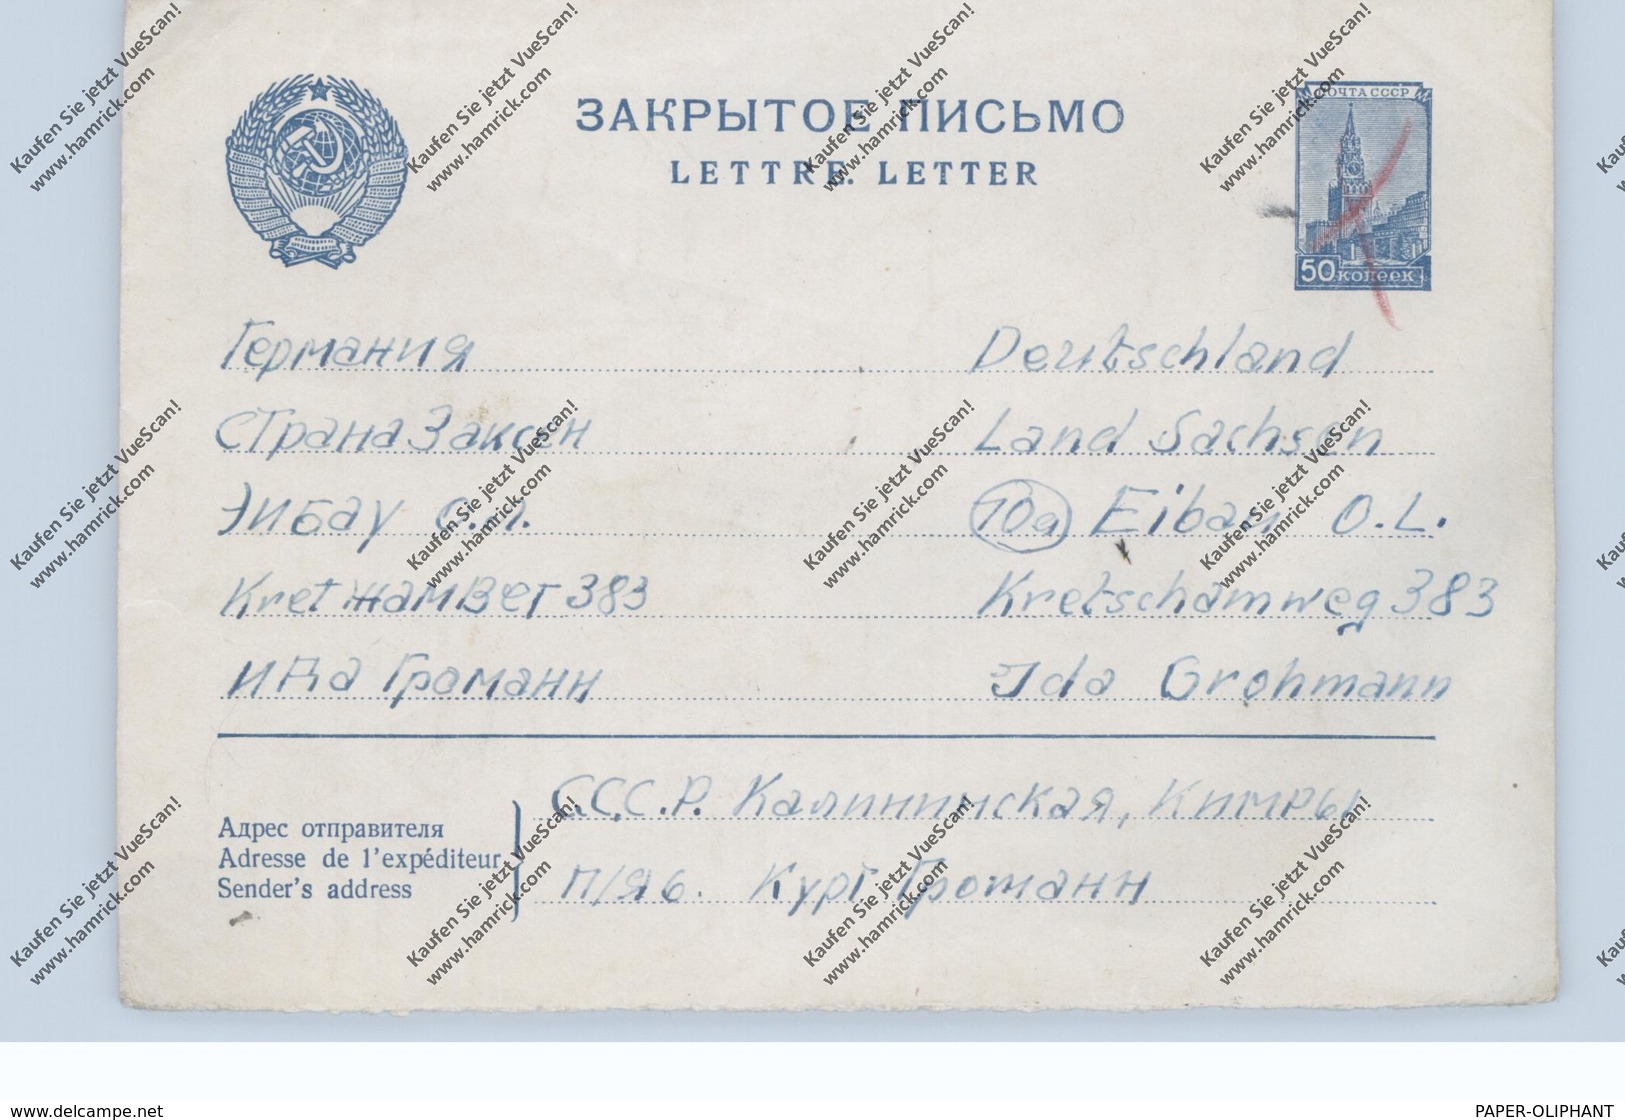 RUSSIA / RUSSLAND, Postal Stationery / Ganzsache, Michel U 114, In Die DDR, Handentwertet - Covers & Documents